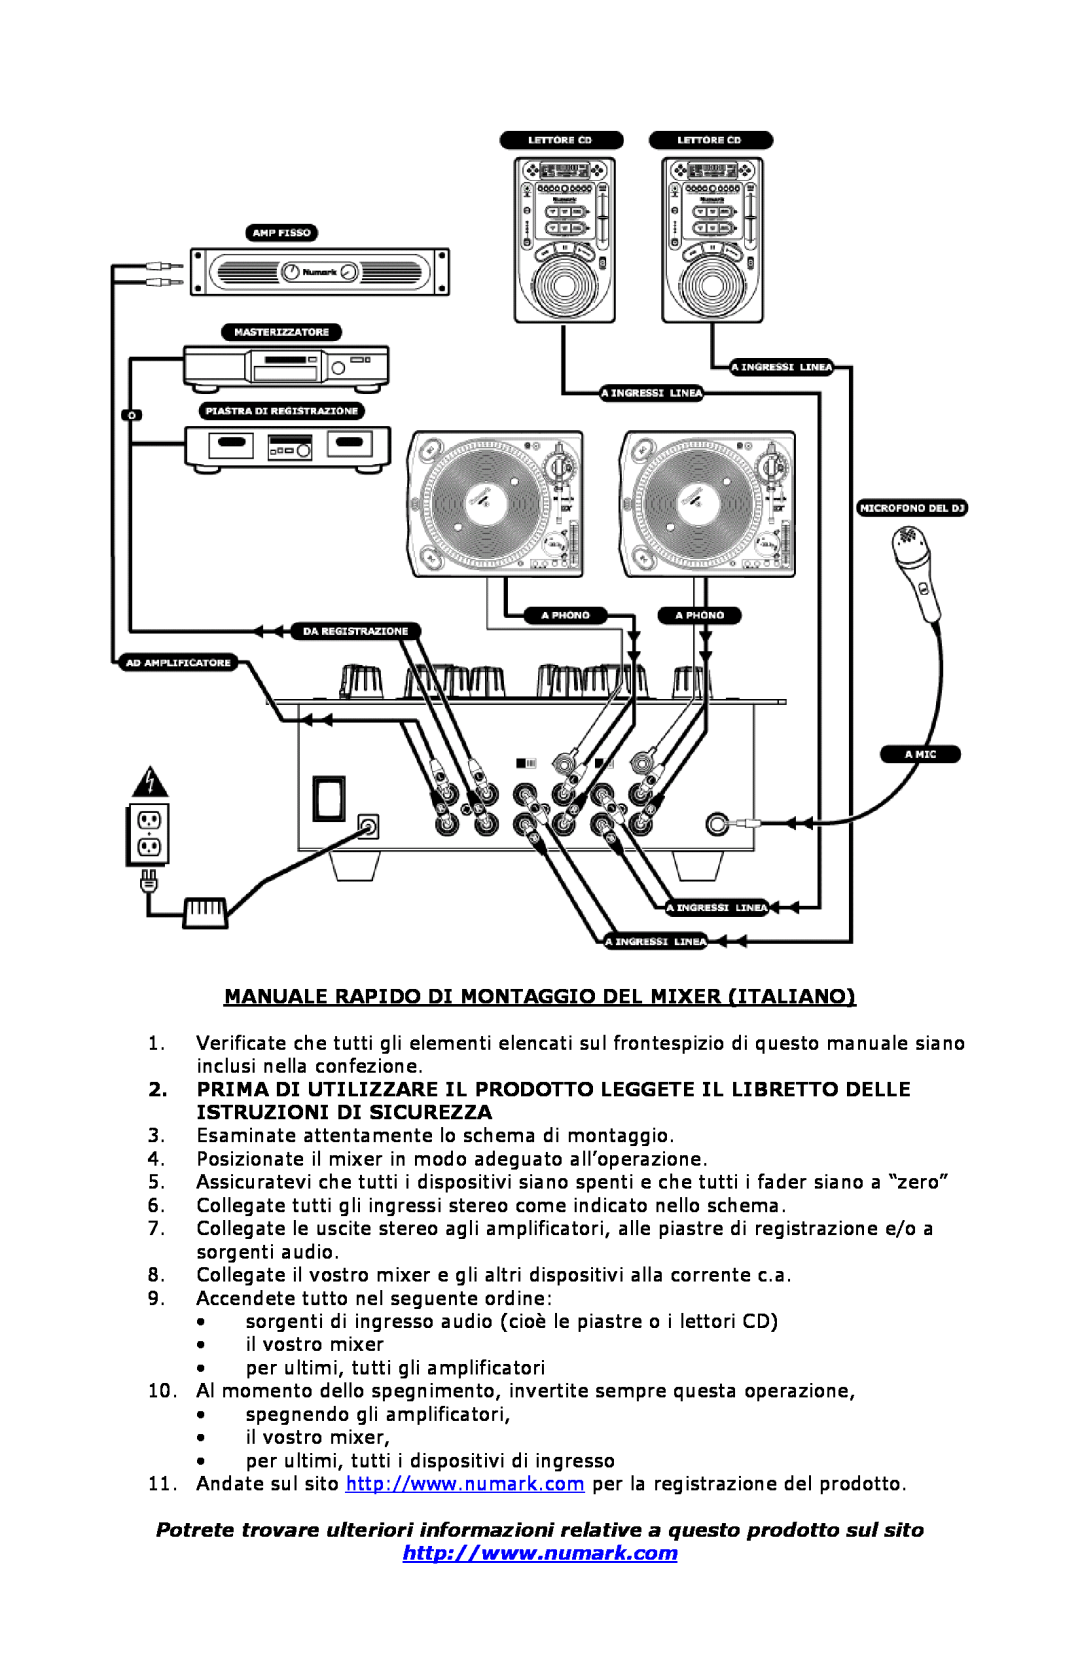 Numark Industries DXM01 quick start Manuale Rapido Di Montaggio Del Mixer Italiano 